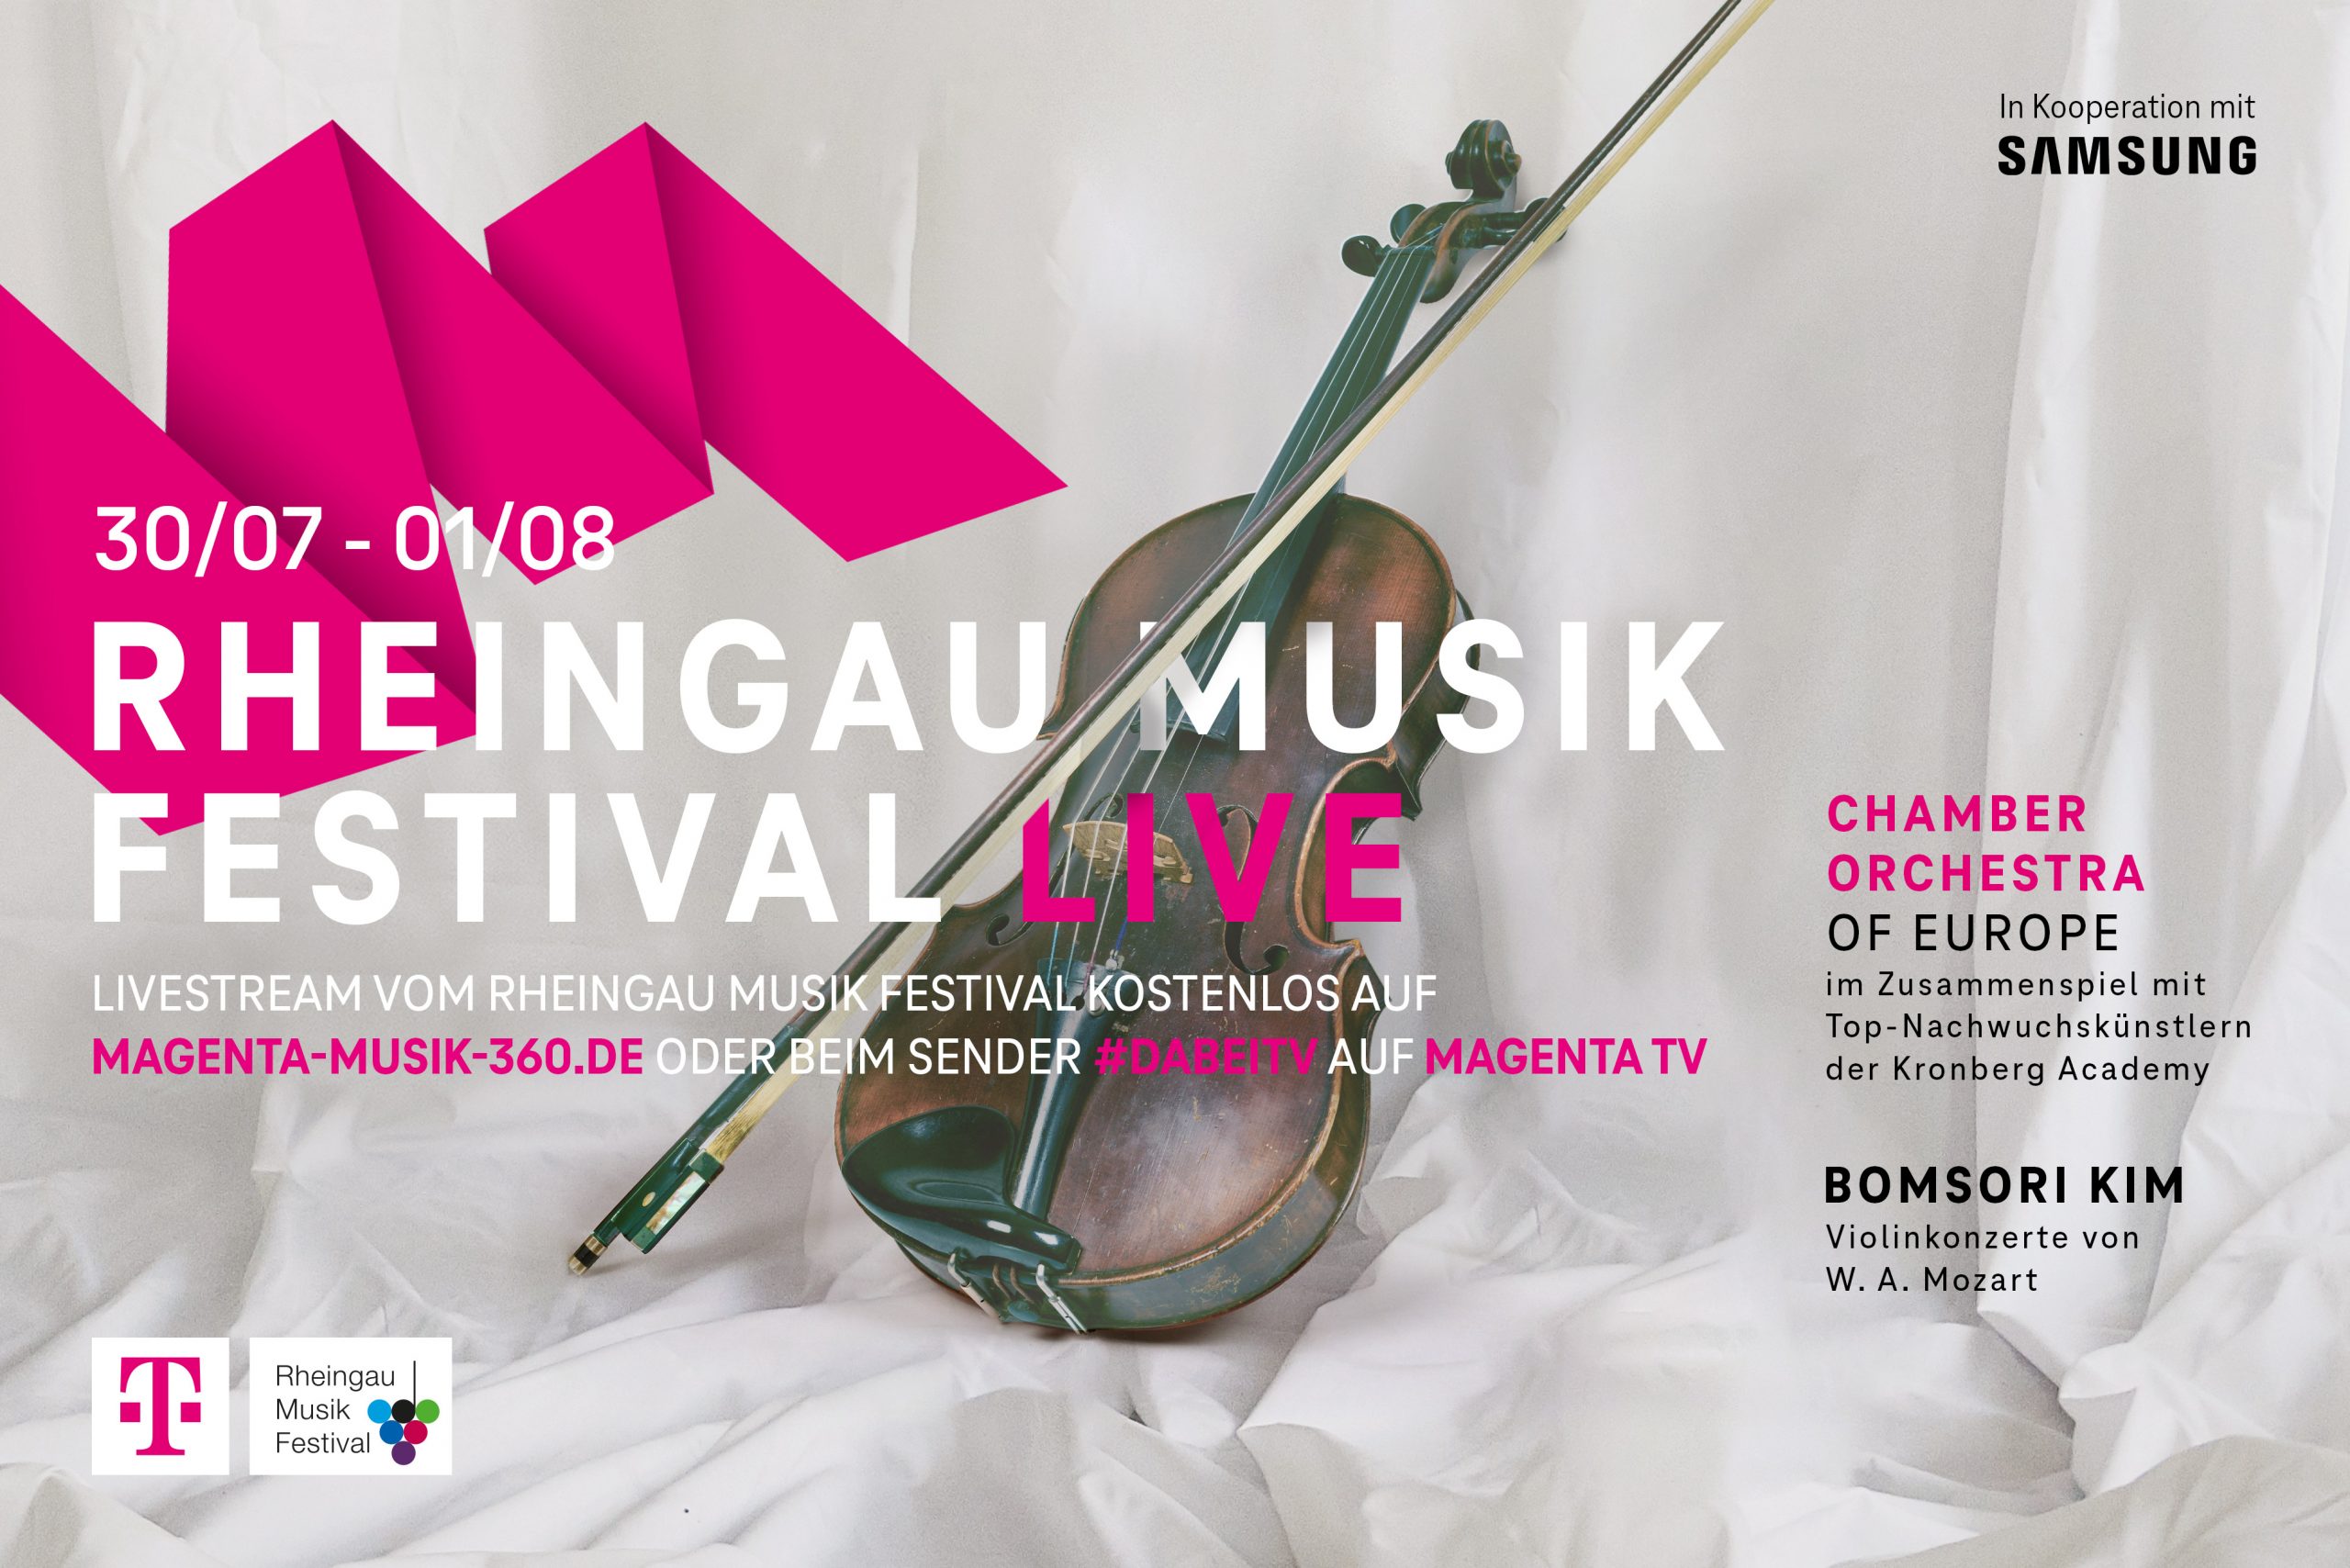 Telekom zeigt Highlights des Rheingau Musik Festivals im Livestream